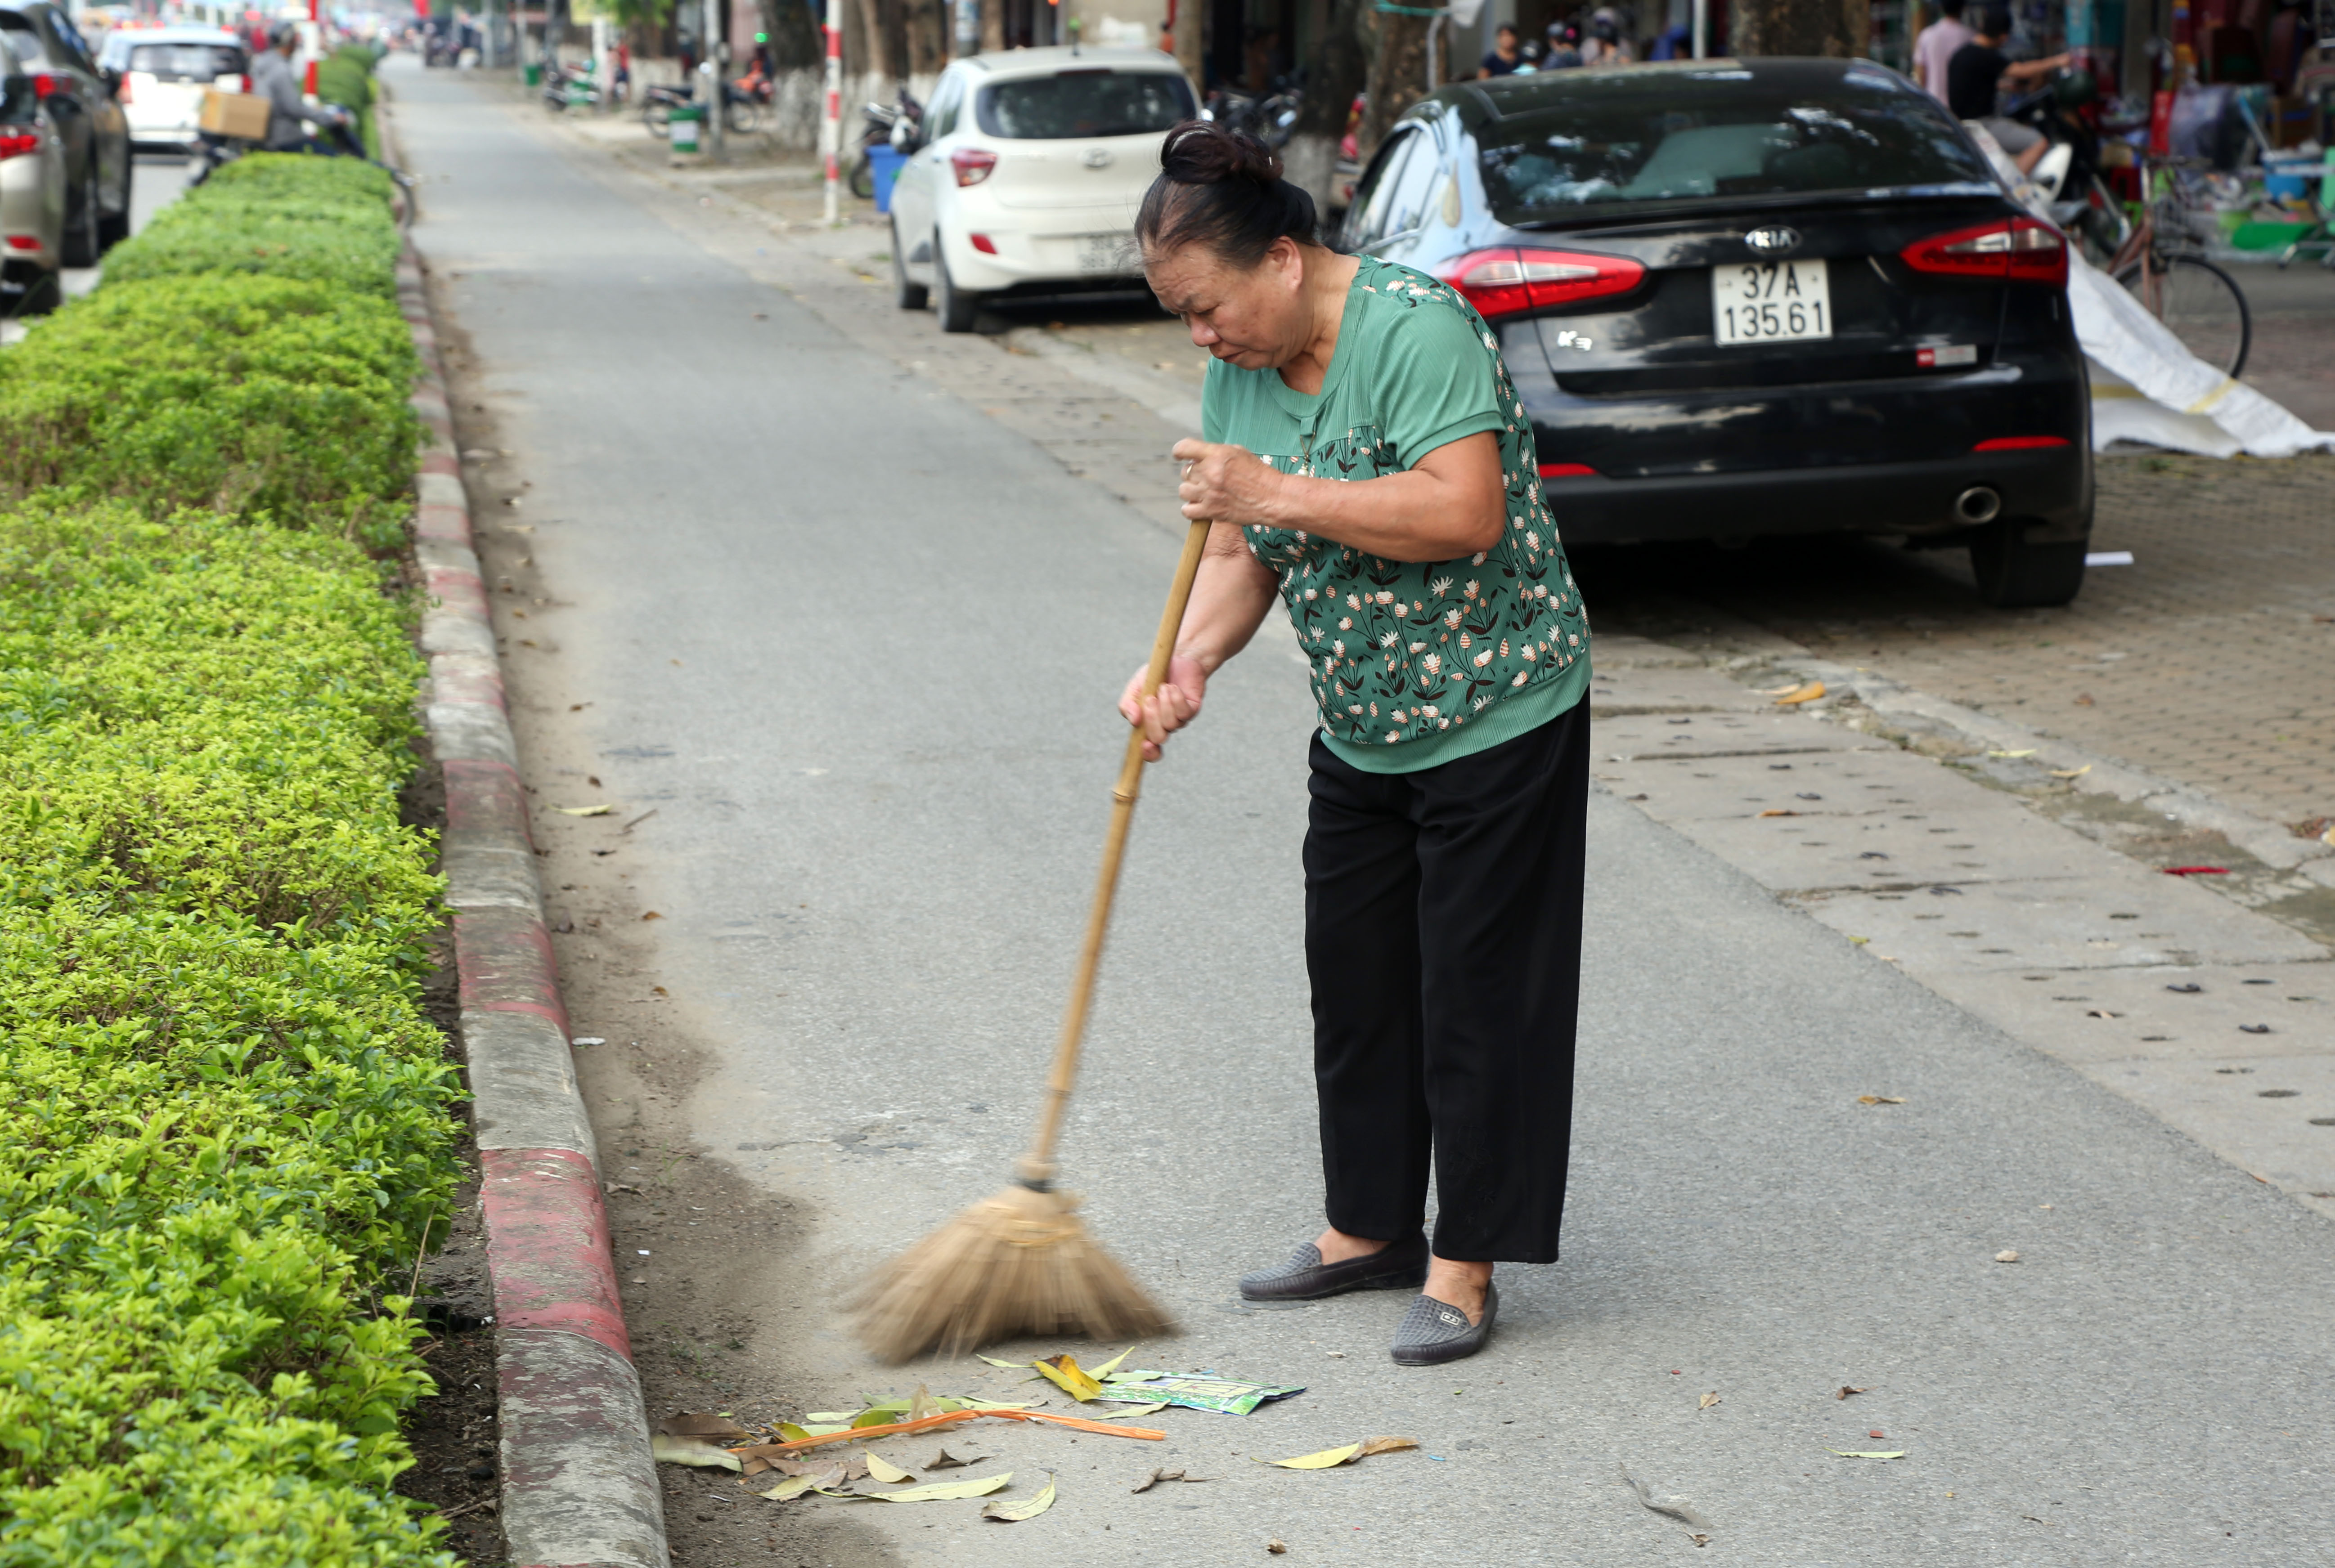 Ngày nào cũng như ngày nào, bà Hoa vẫn cần mẫn quét rác cho khu phố. Ảnh: Hoàng Hảo